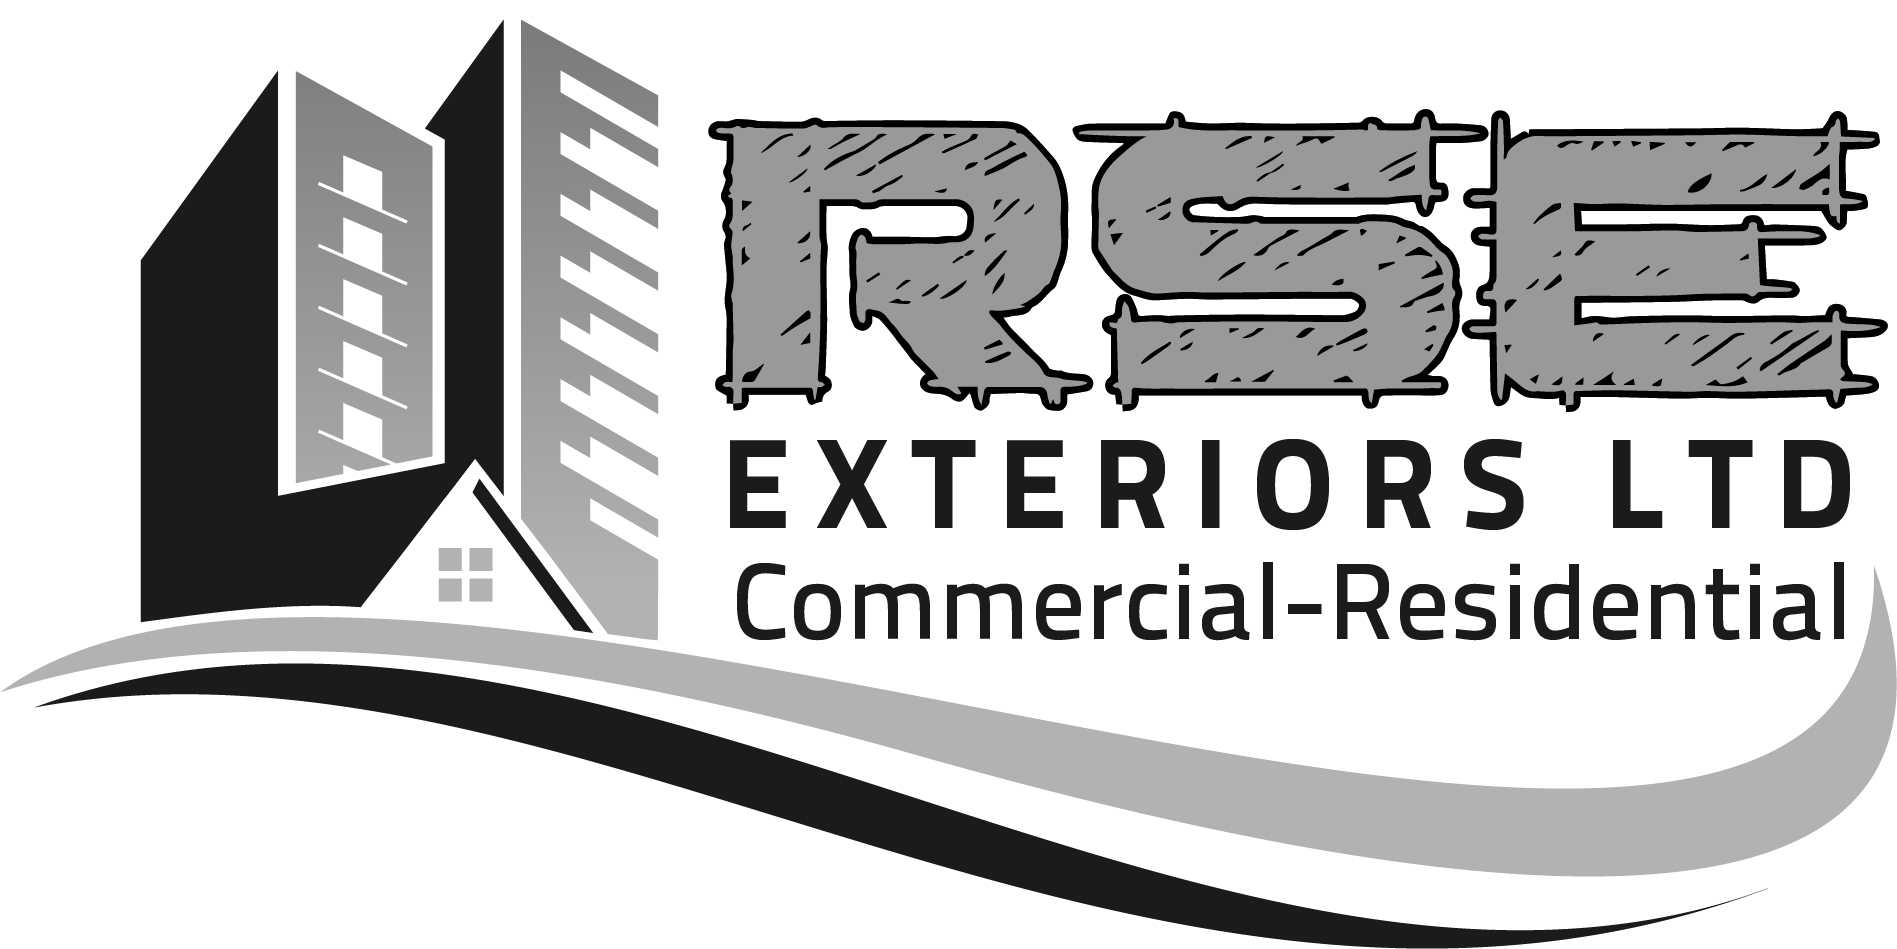 RSE Exteriors Ltd